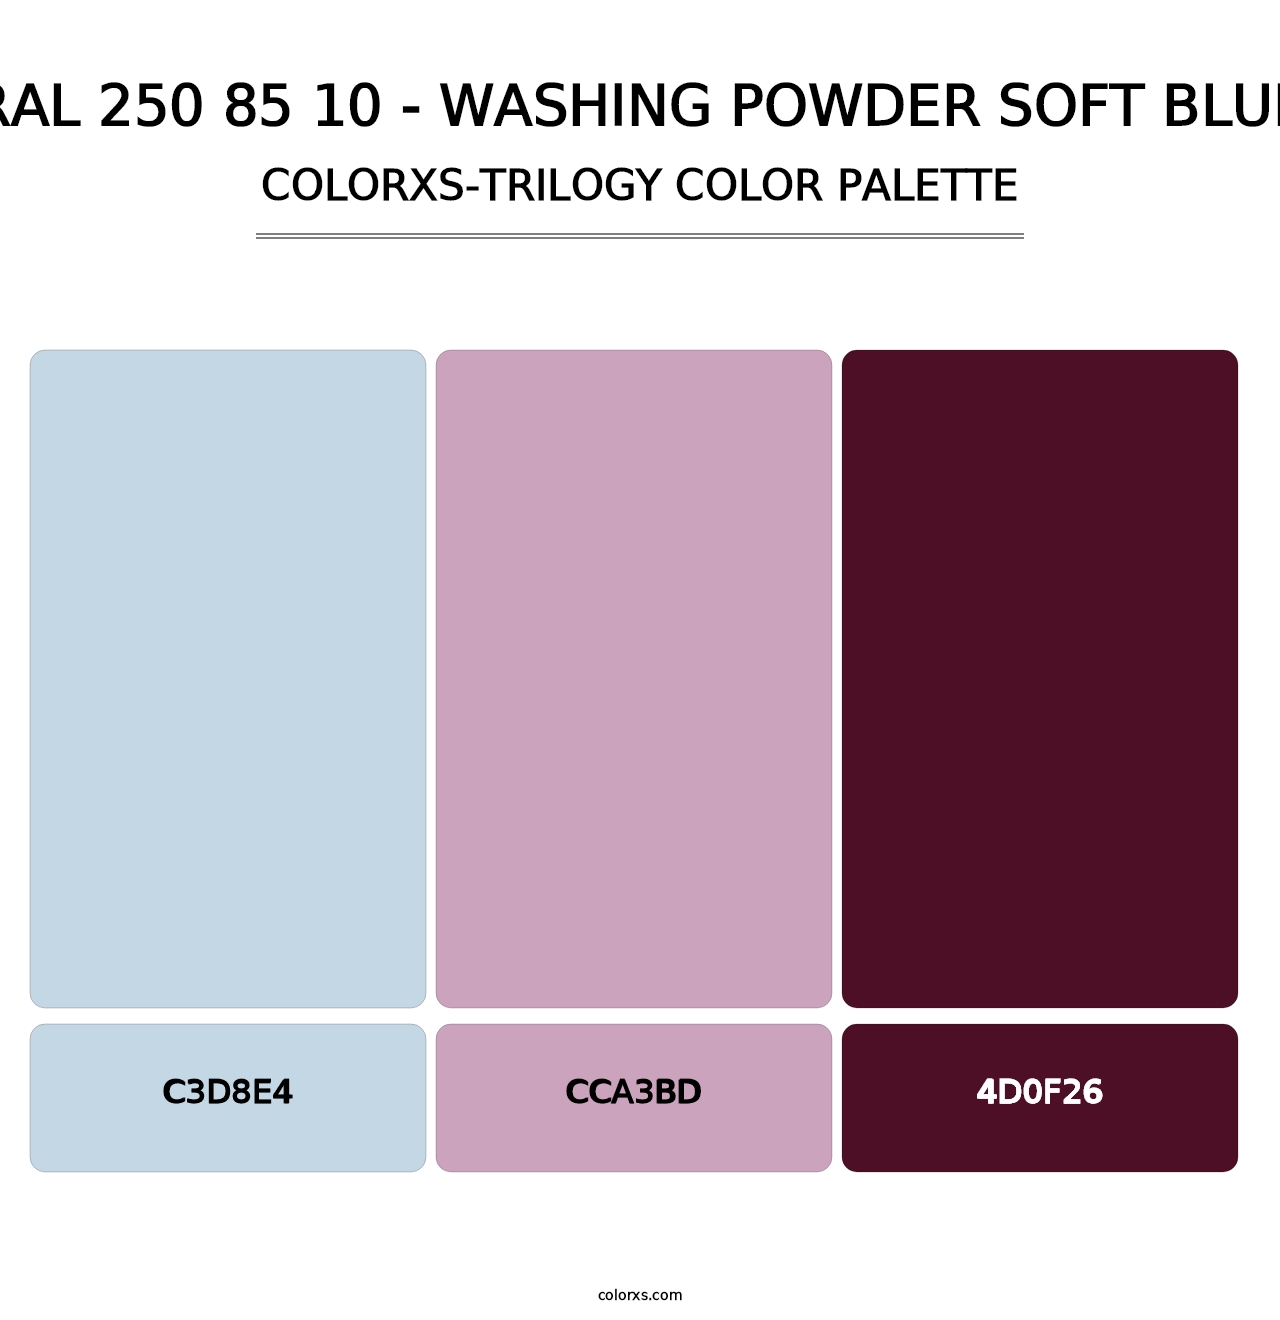 RAL 250 85 10 - Washing Powder Soft Blue - Colorxs Trilogy Palette